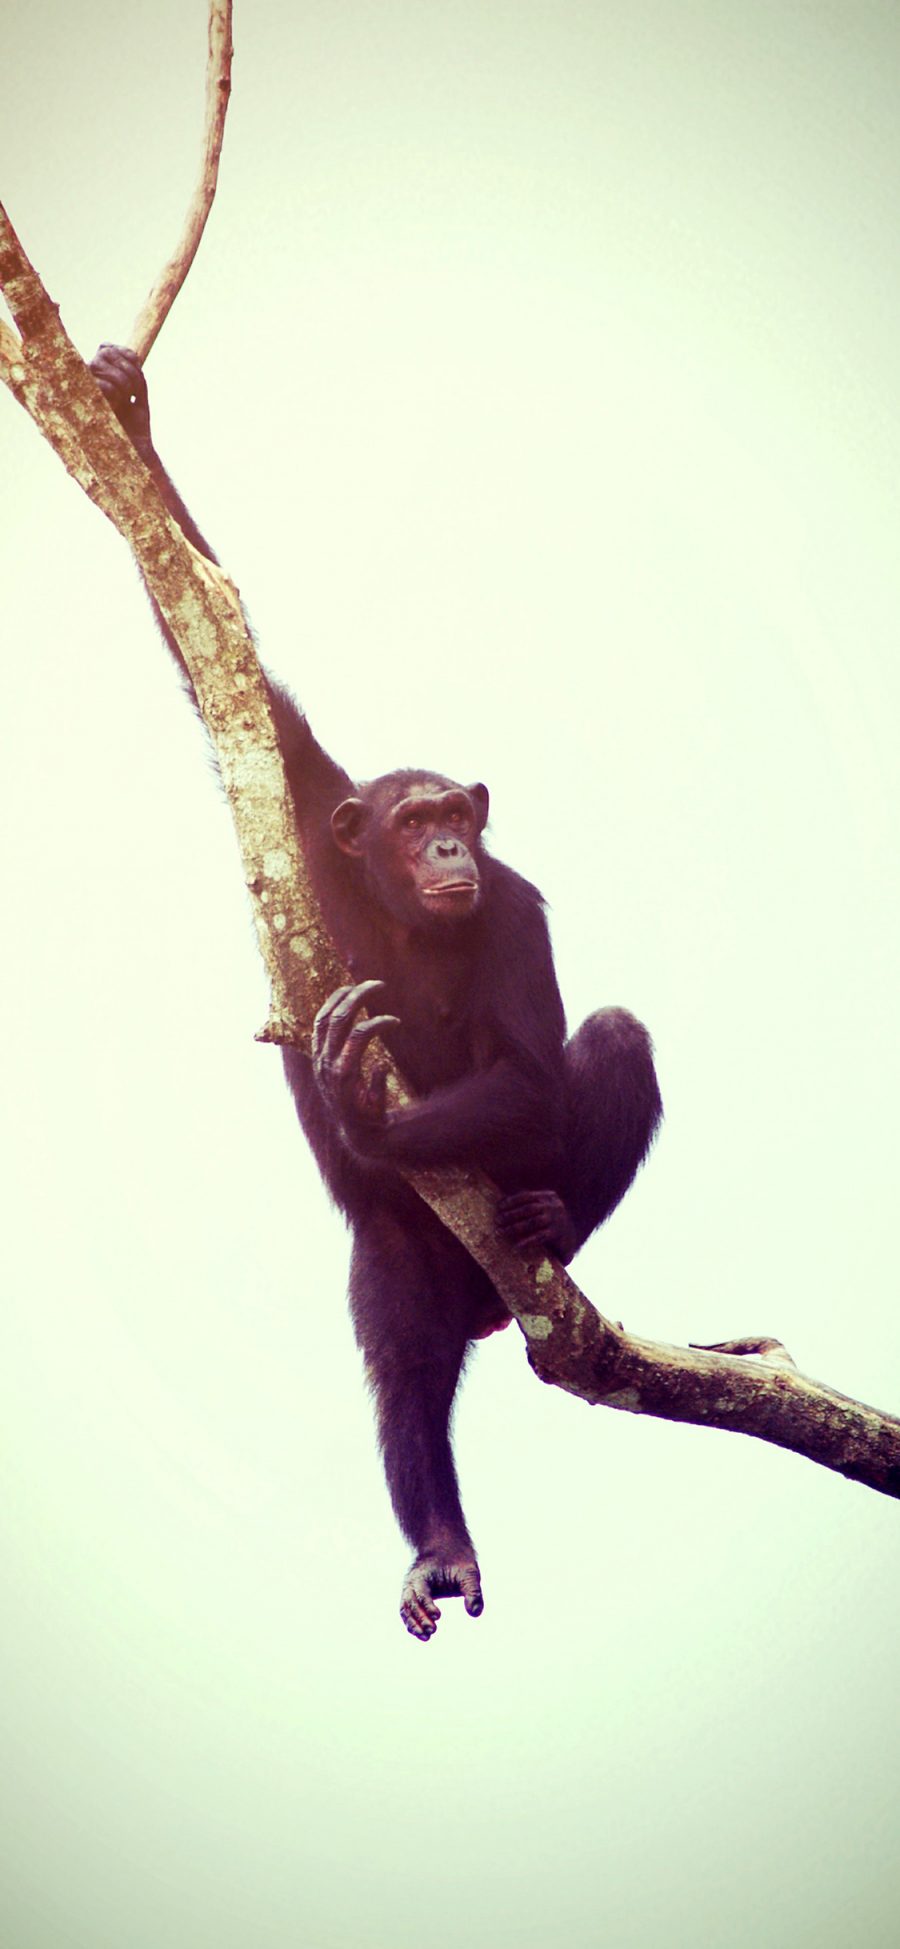 2436 1125 猴子猩猩猿枝干攀爬苹果手机壁纸图片 全面屏手机壁纸